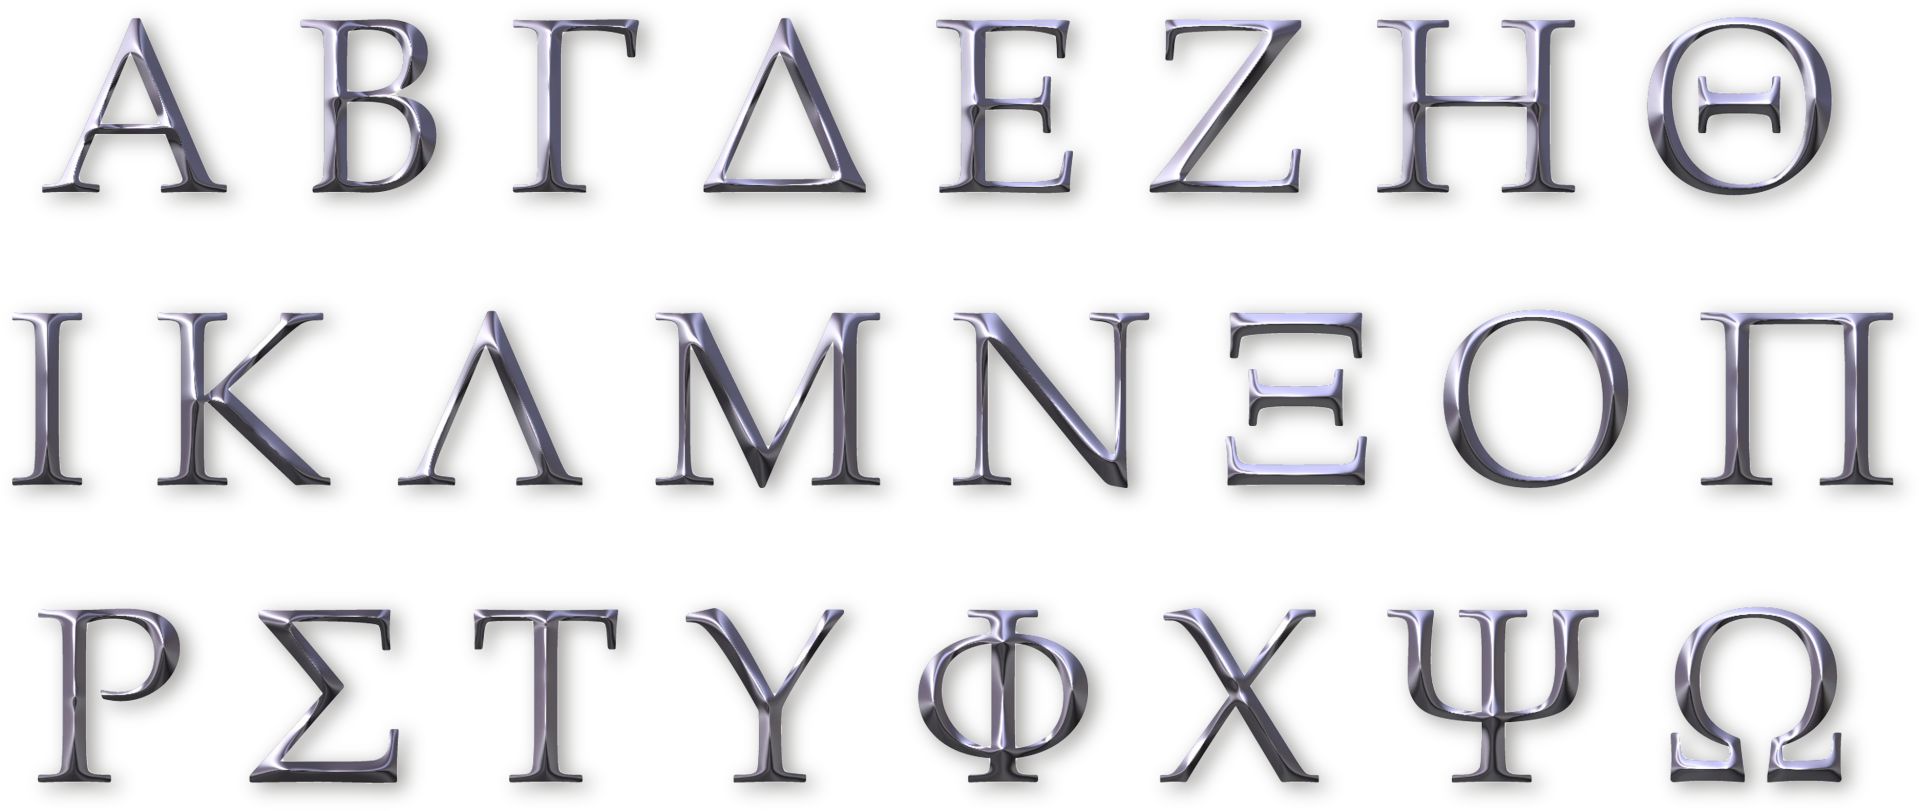 กรีกโบราณสำหรับเด็ก: อักษรกรีกและตัวอักษร